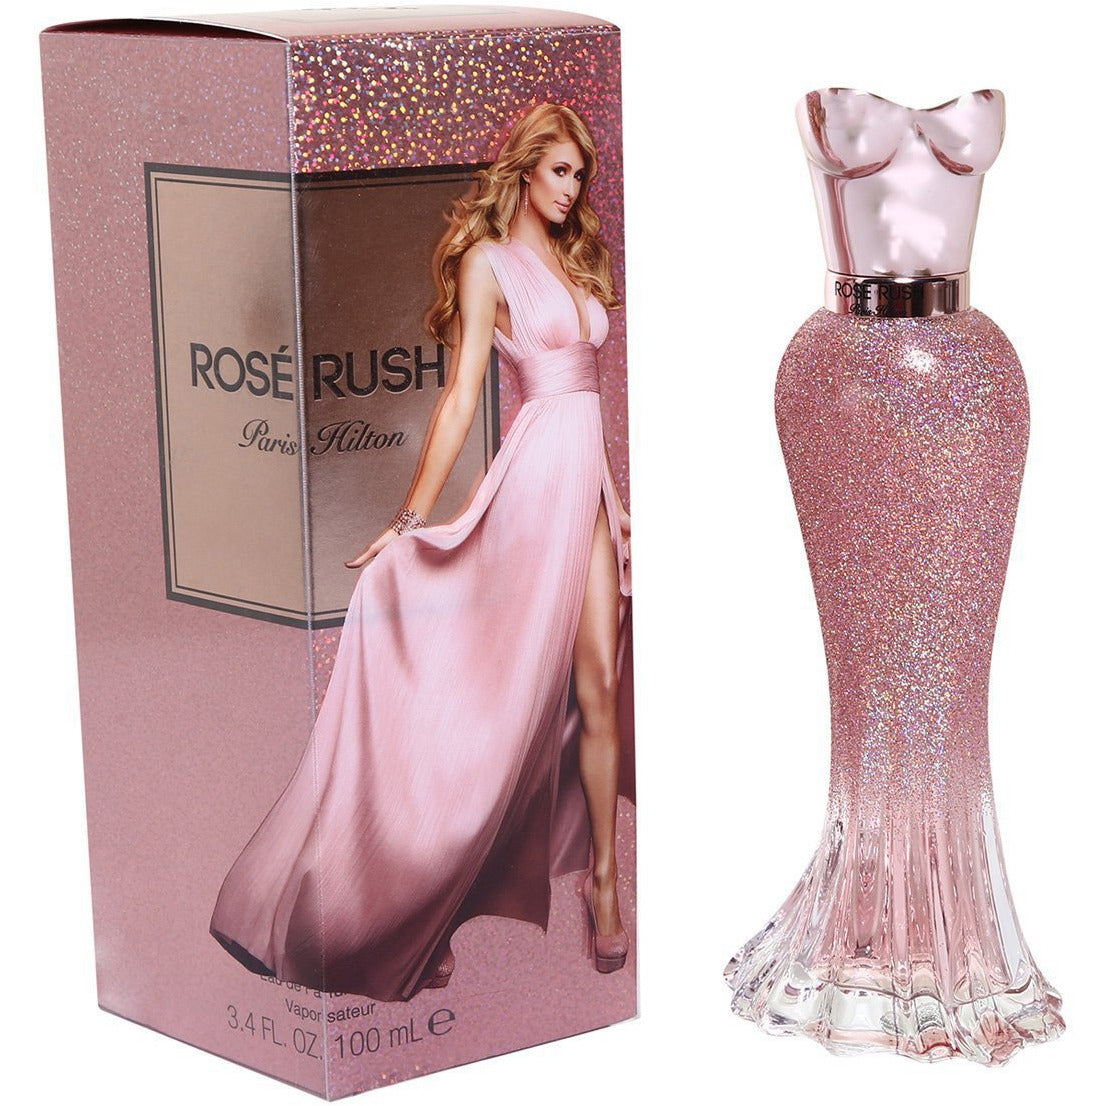 perfume paris hilton rose rush mujer precio